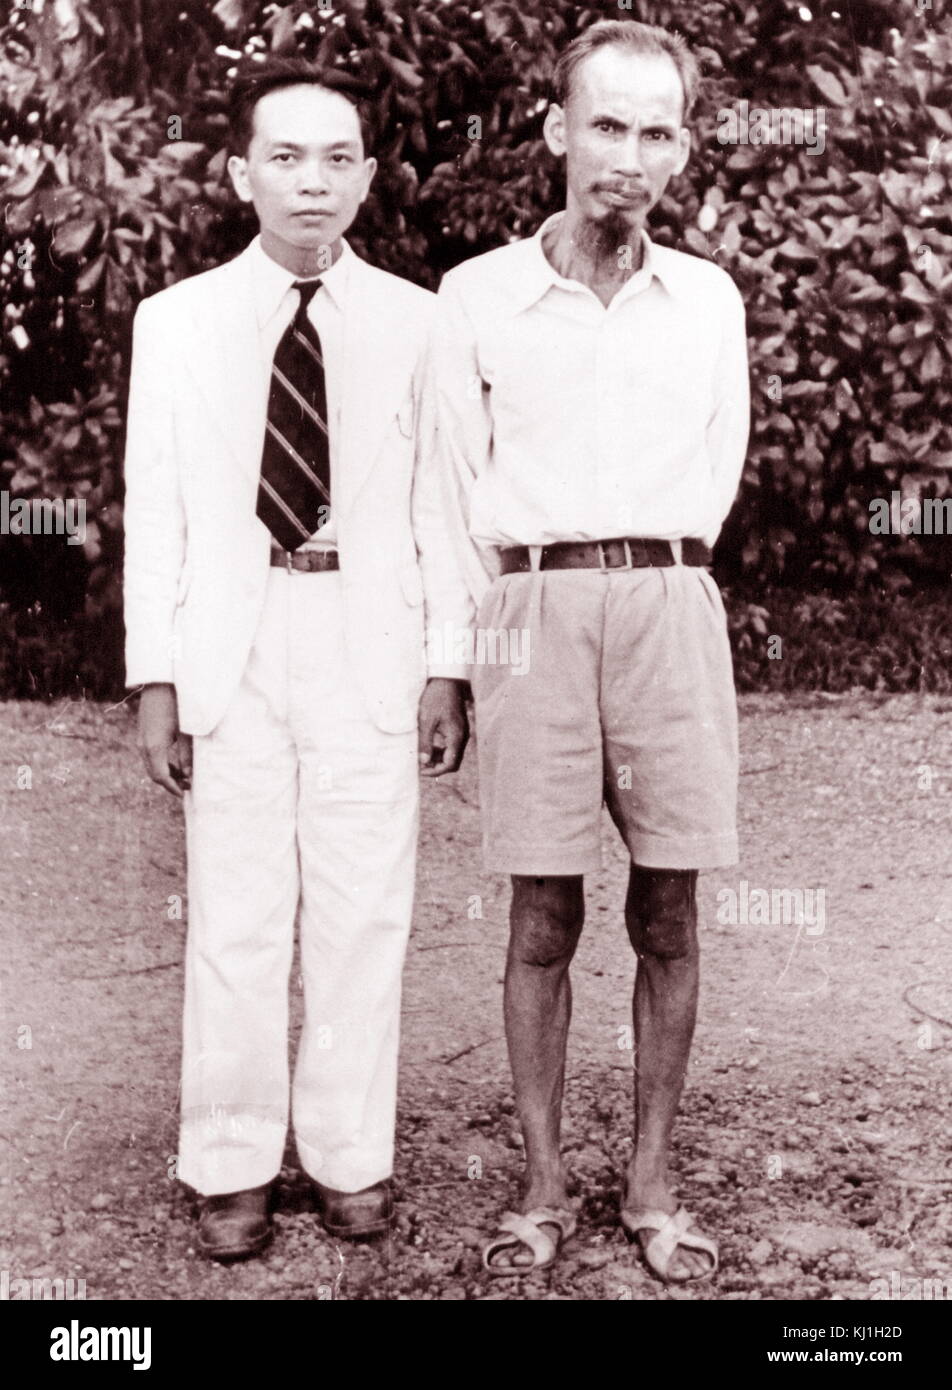 Võ Nguyên Giáp (1911-2013), Kommandant der die vietnamesischen Volksarmee mit H? Chí Minh (1890-1969), (Rechts), der Vietnamesischen kommunistischen revolutionären Führer, ca. 1954 Stockfoto